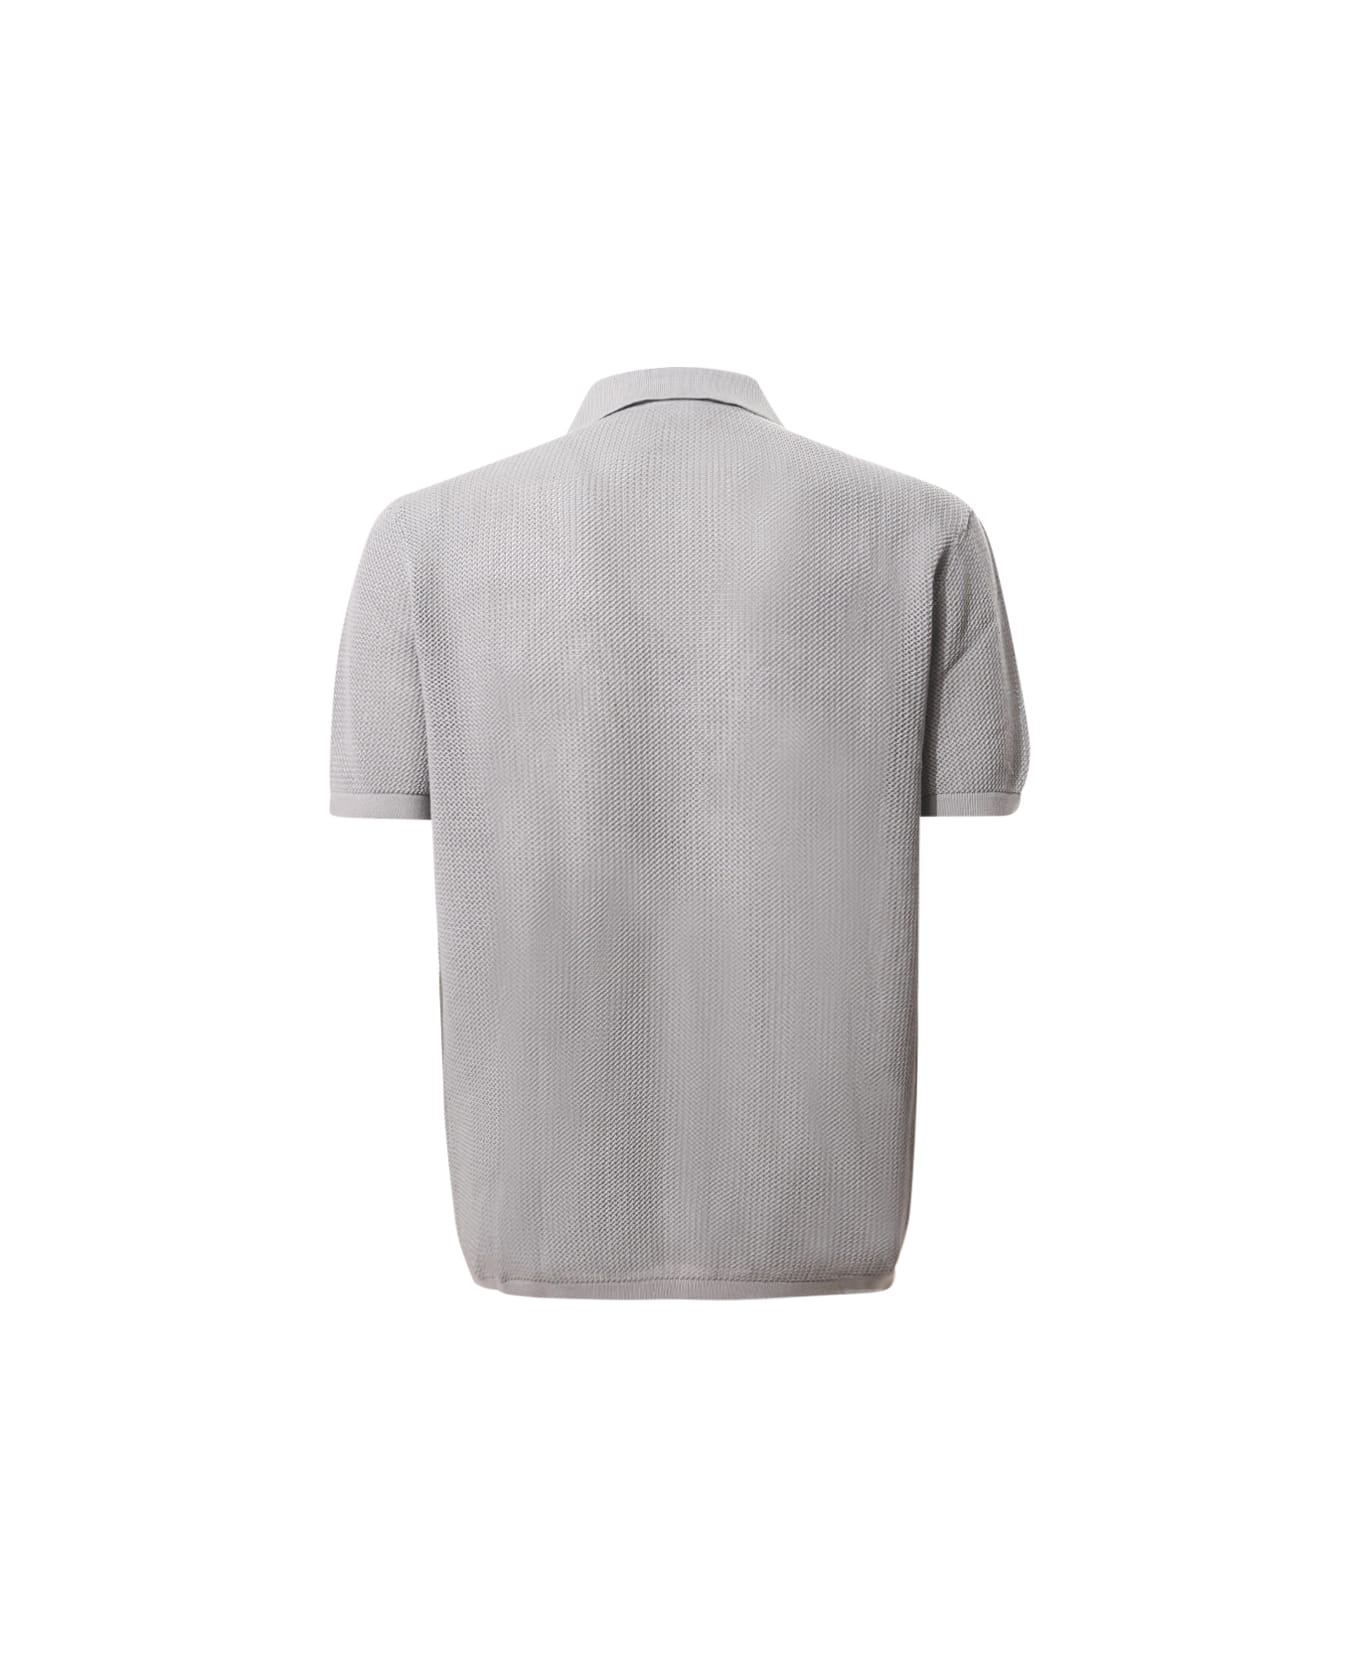 Emporio Armani Polo Neck Sweater - Grey ポロシャツ